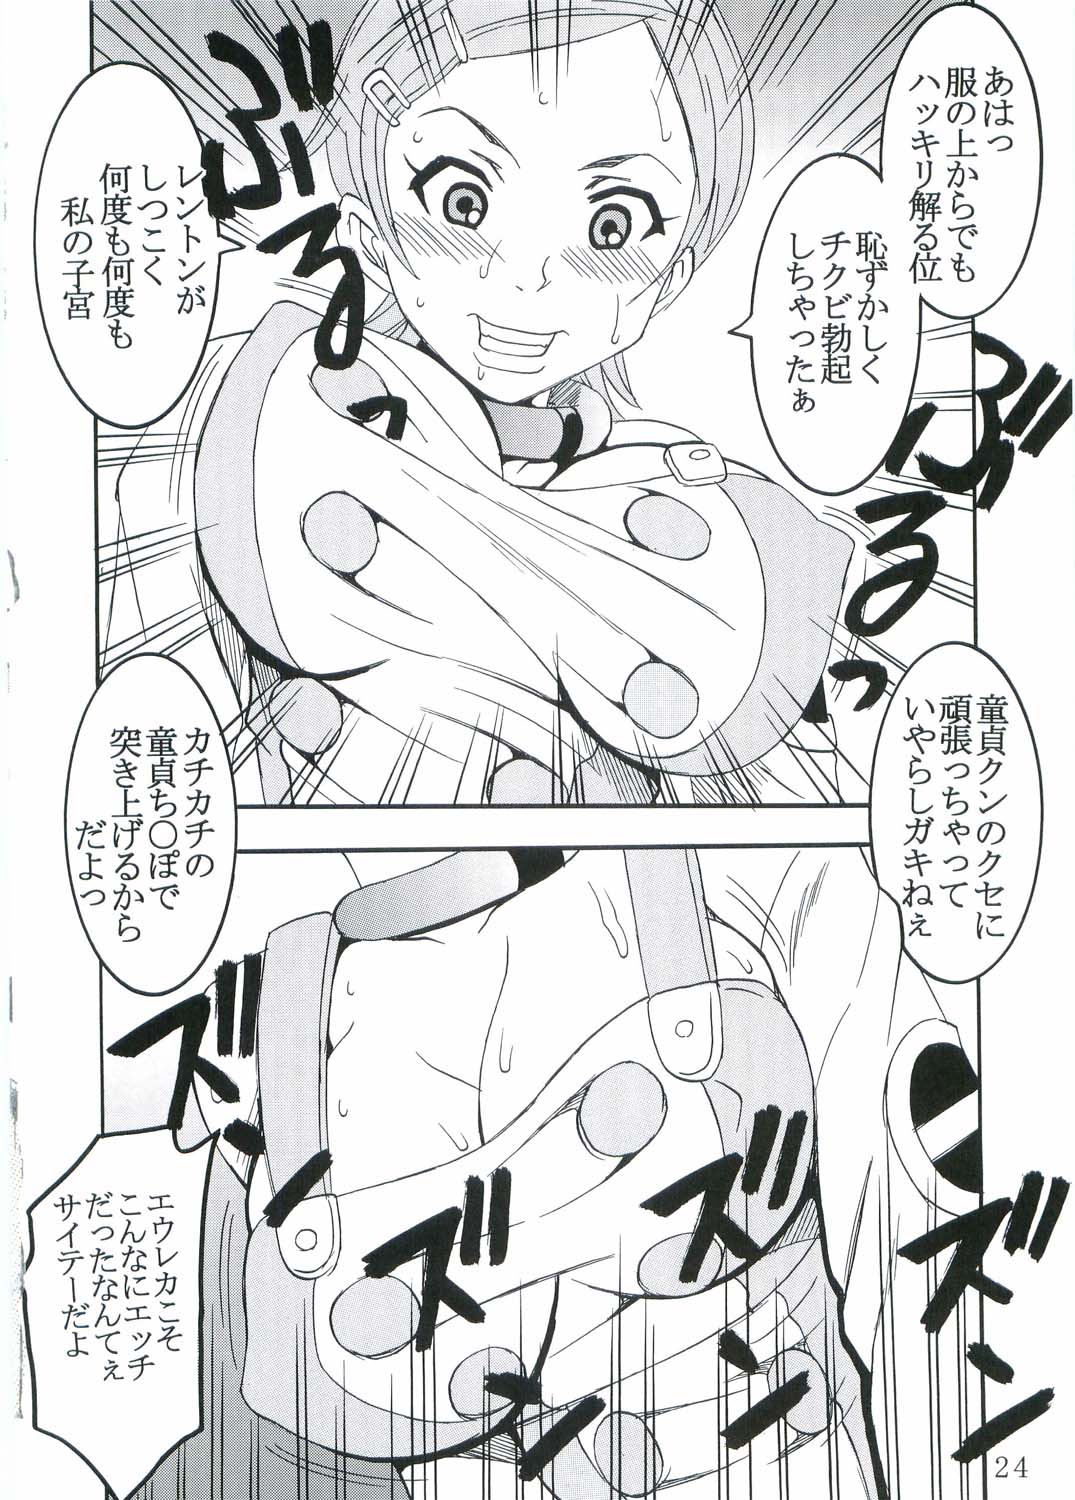 [St. Rio (Kitty, Kouenji Rei)] Ura ray-out (Eureka seveN) page 25 full